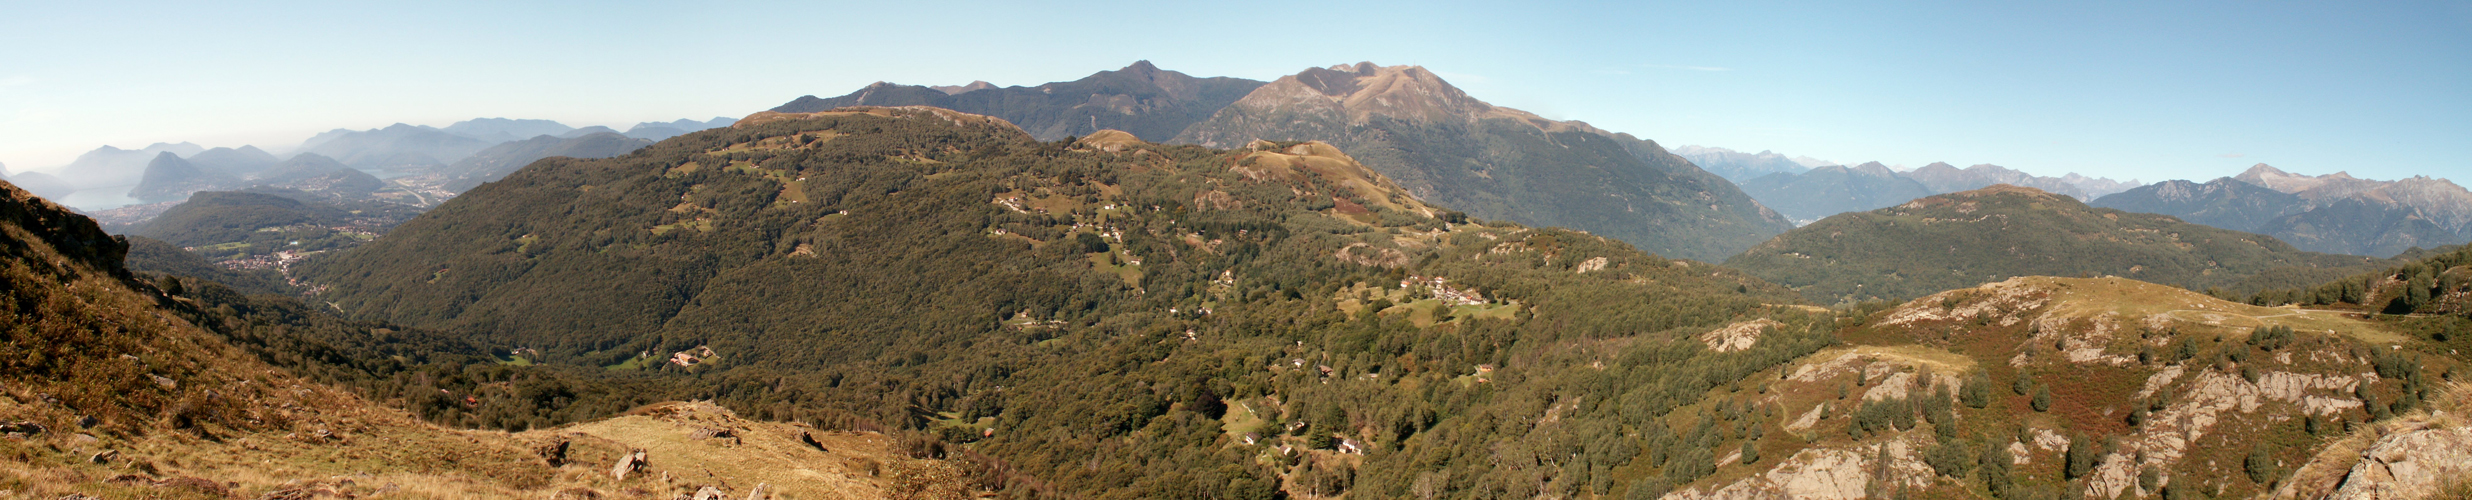 Breitbildfoto mit Monte Bigorio